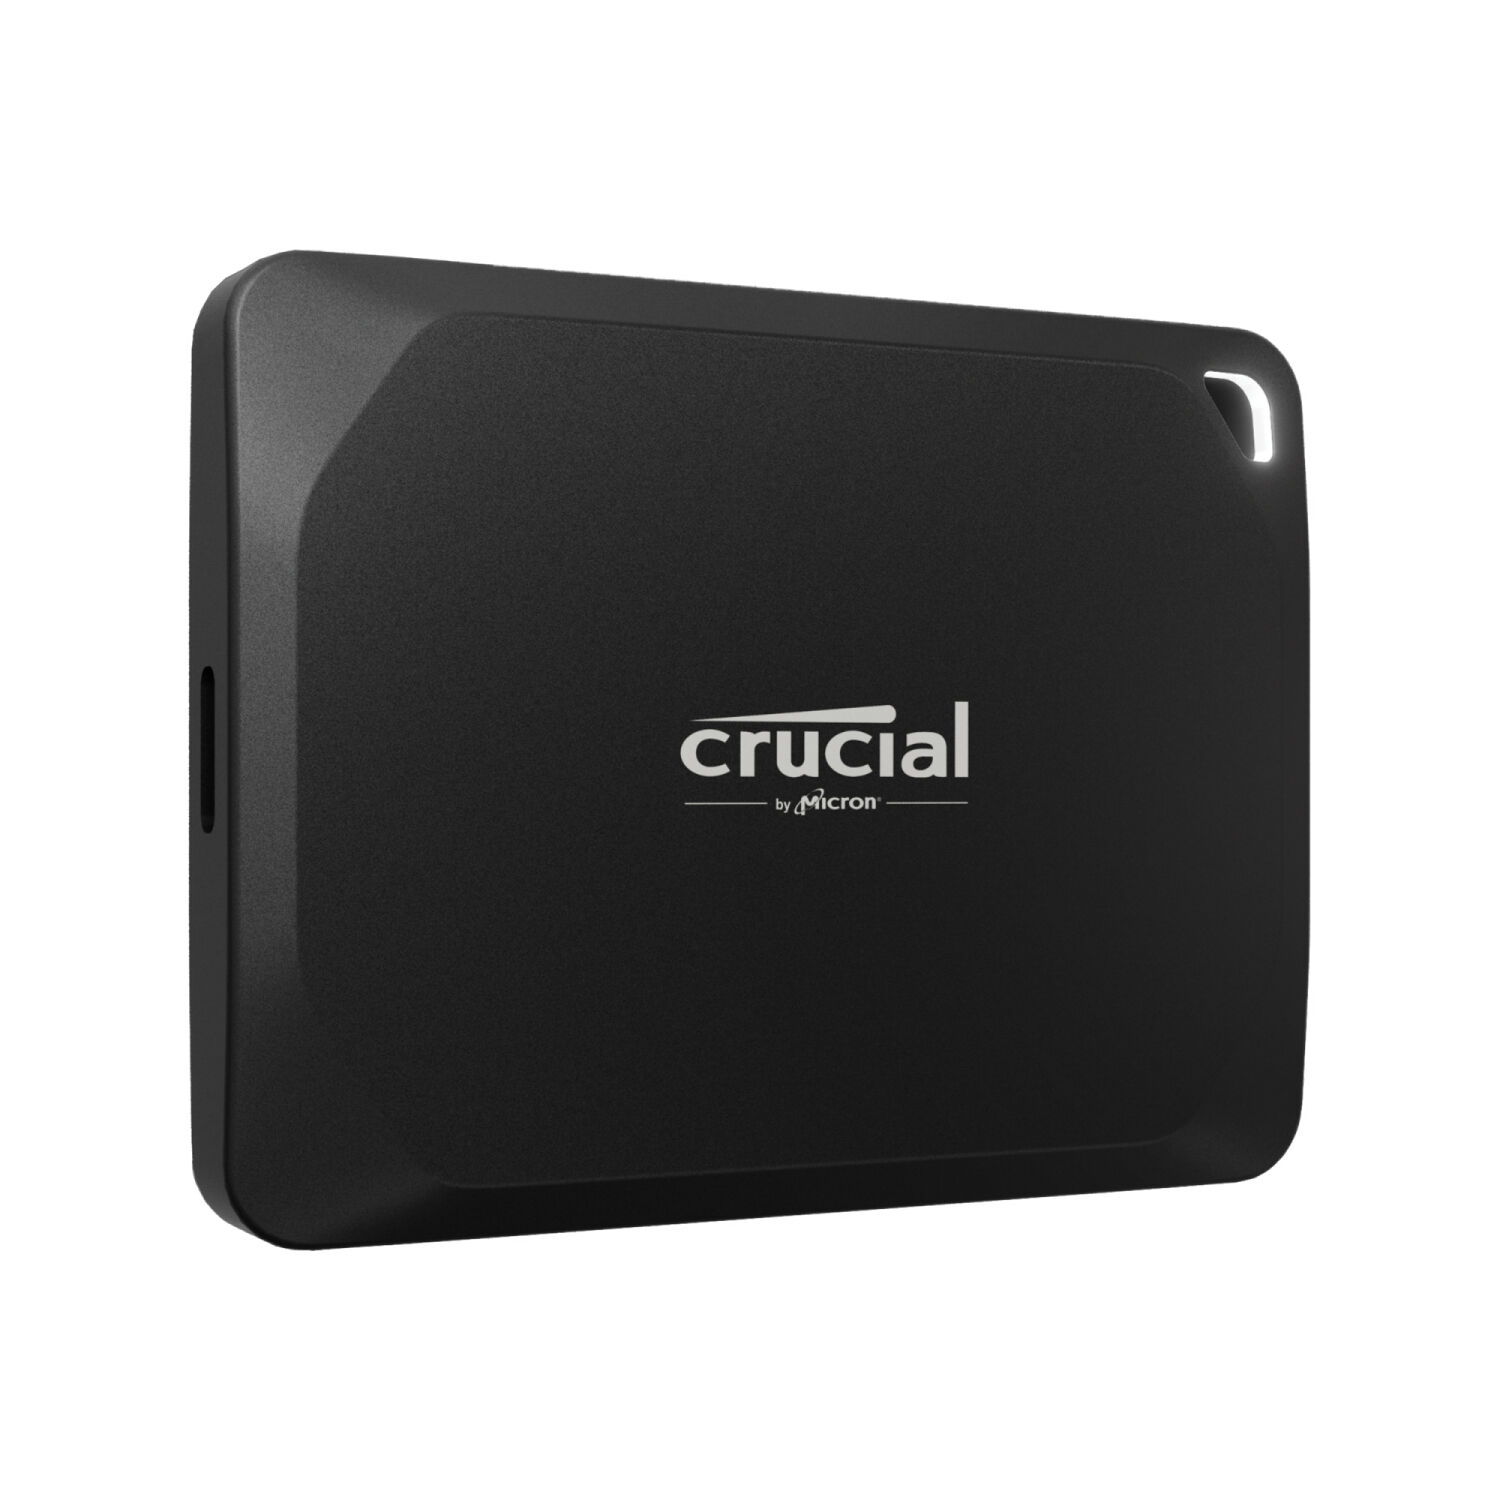 Crucial SSD esterno  X10 Pro 2 TB Nero [CT2000X10PROSSD9]